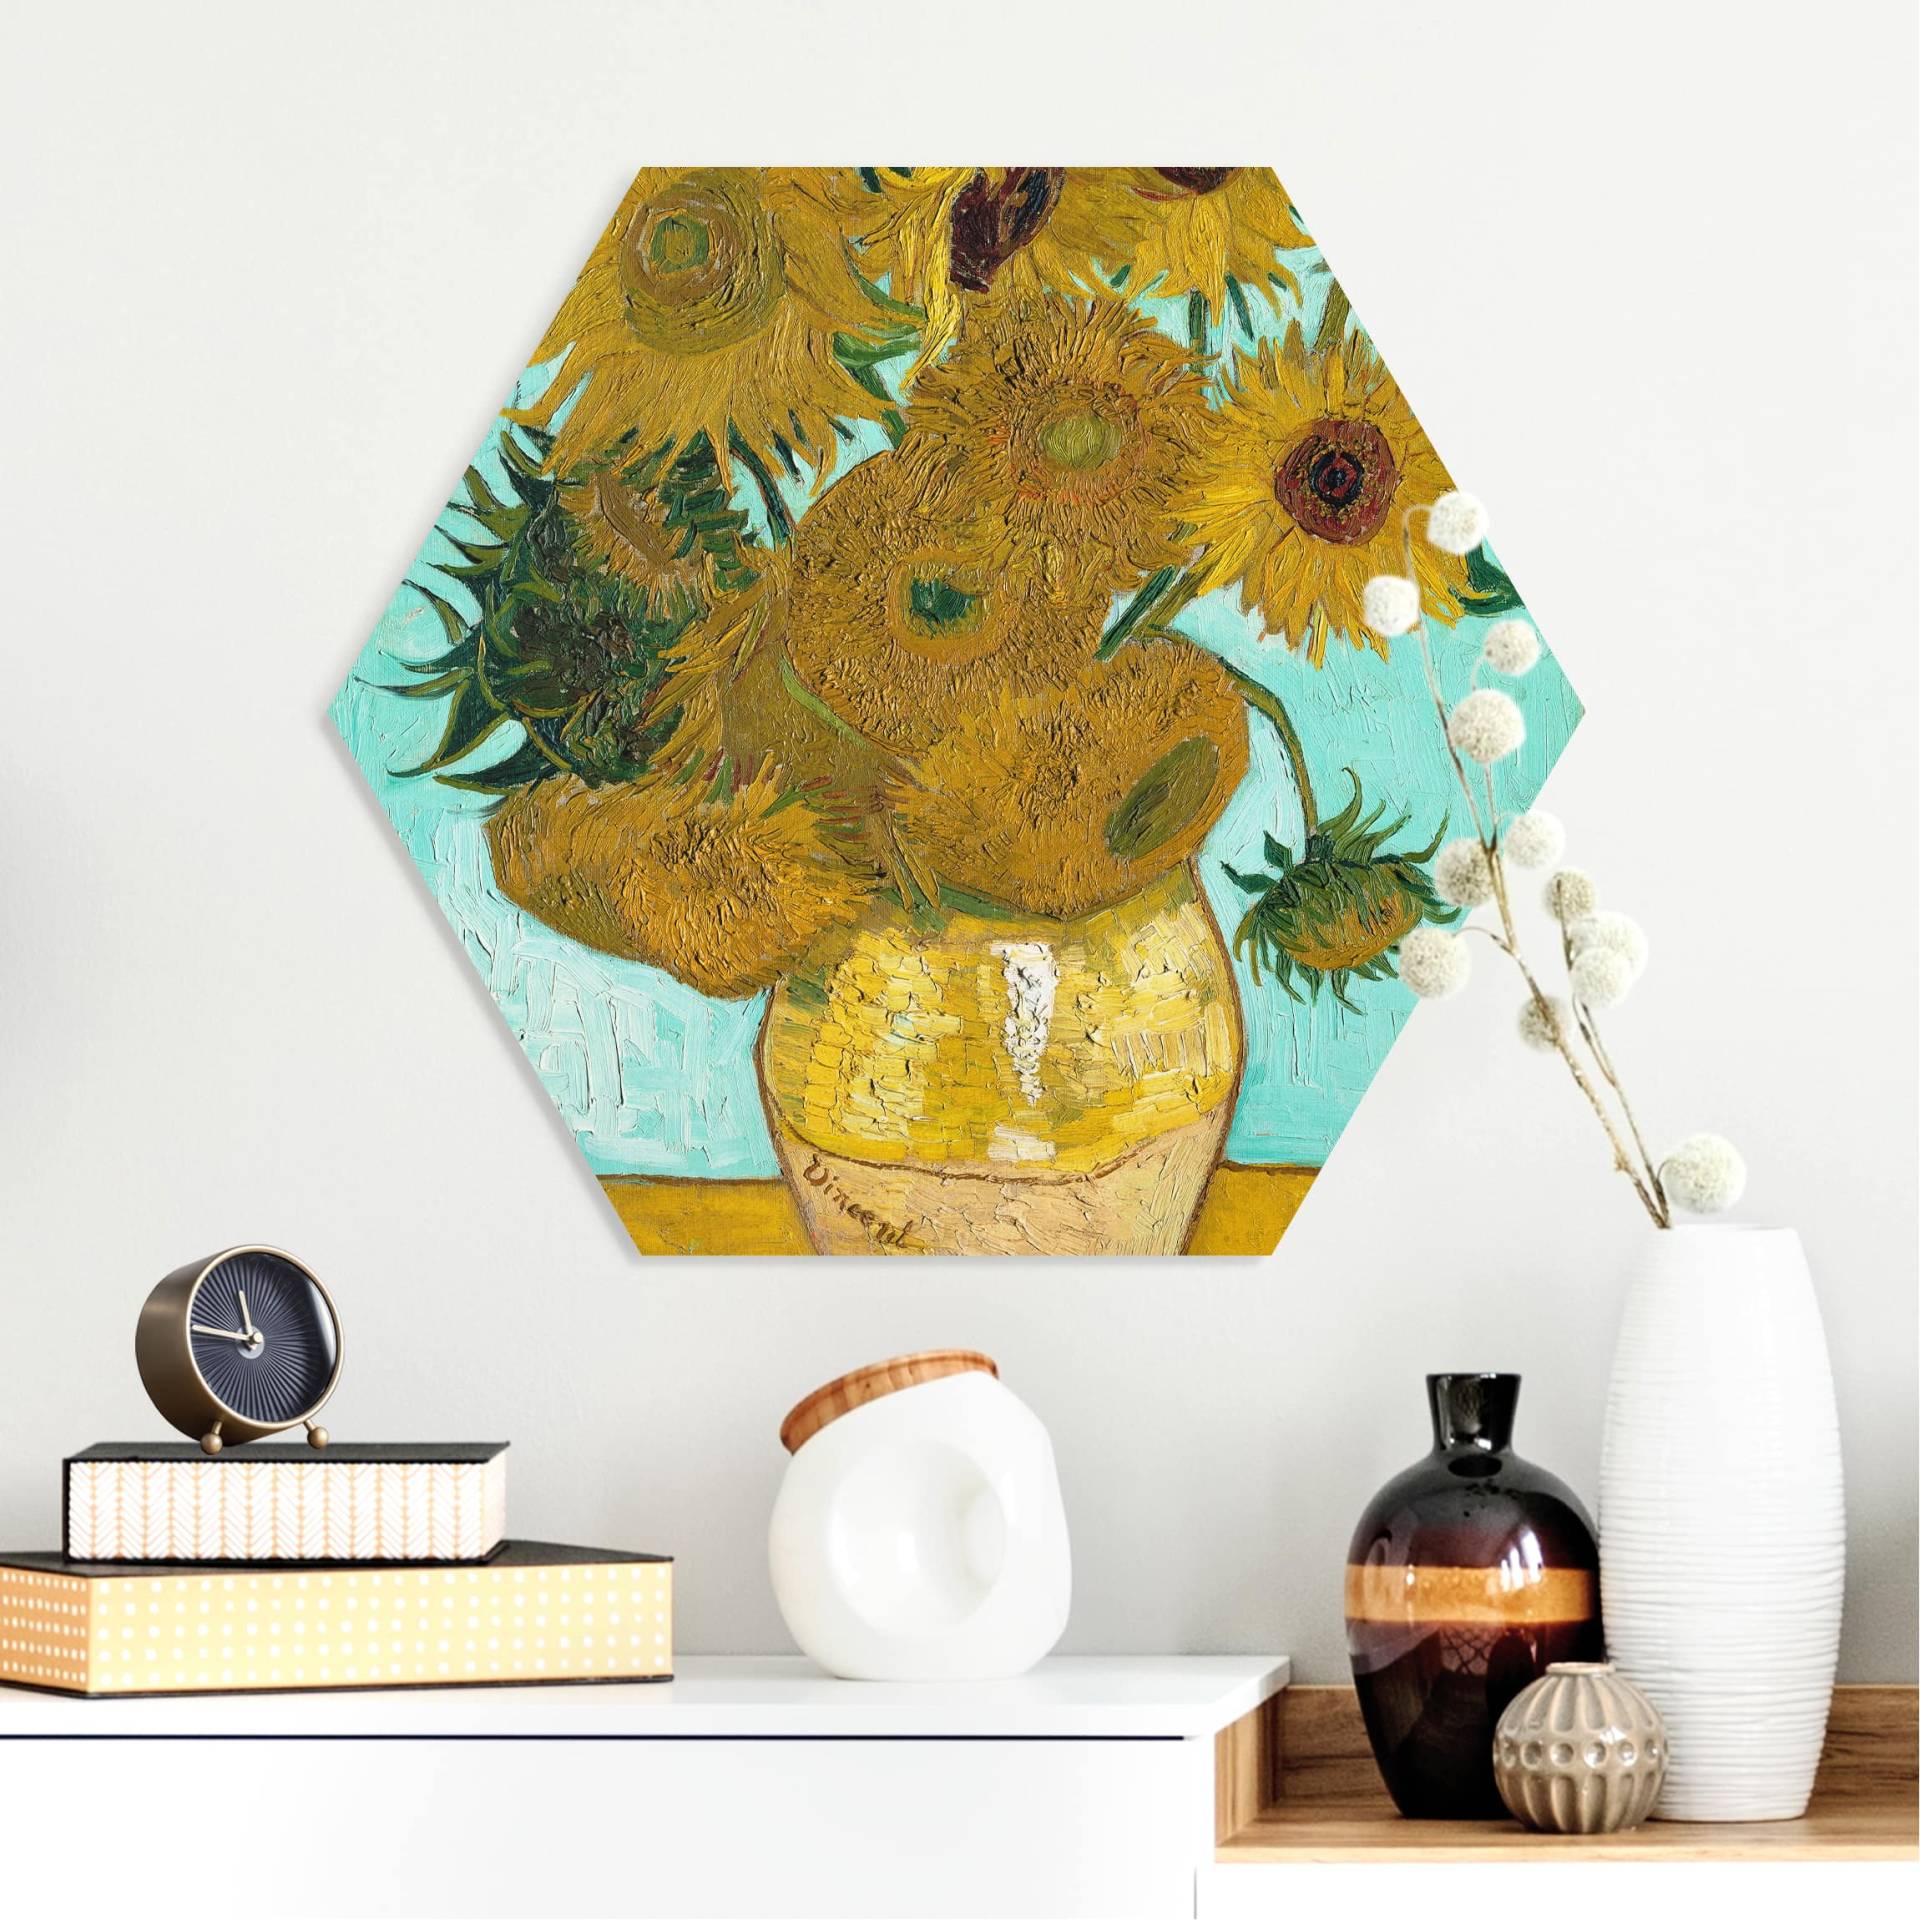 Hexagon-Forexbild Vincent van Gogh - Vase mit Sonnenblumen von Klebefieber